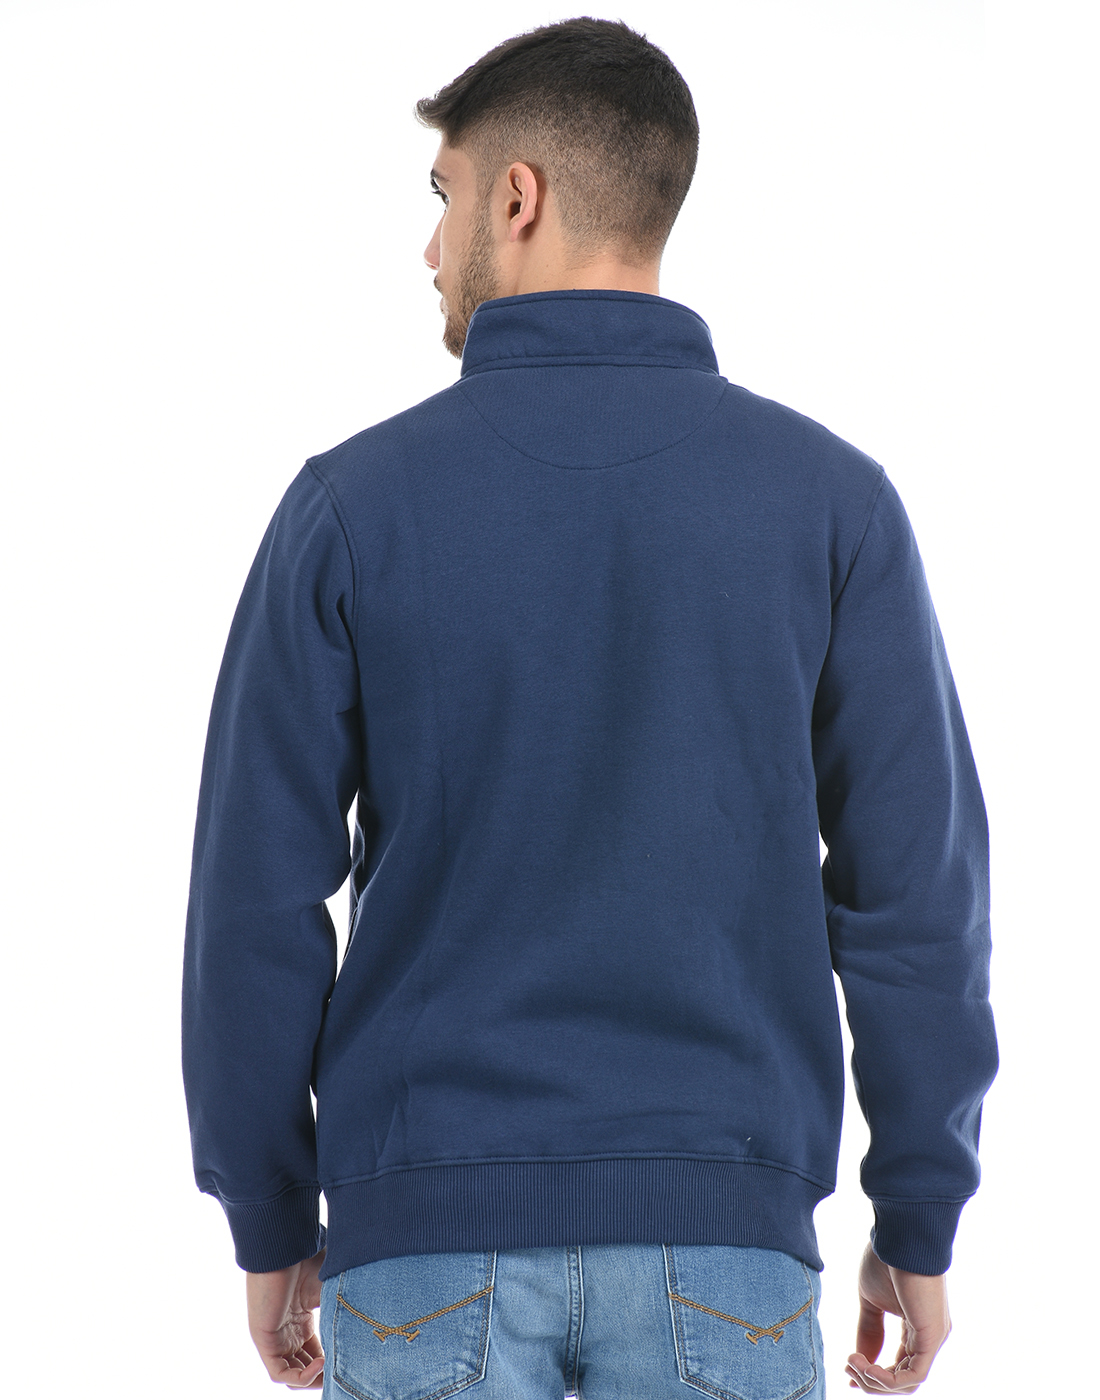 Cloak & Decker by Monte Carlo Men Solid Blue Sweatshirt